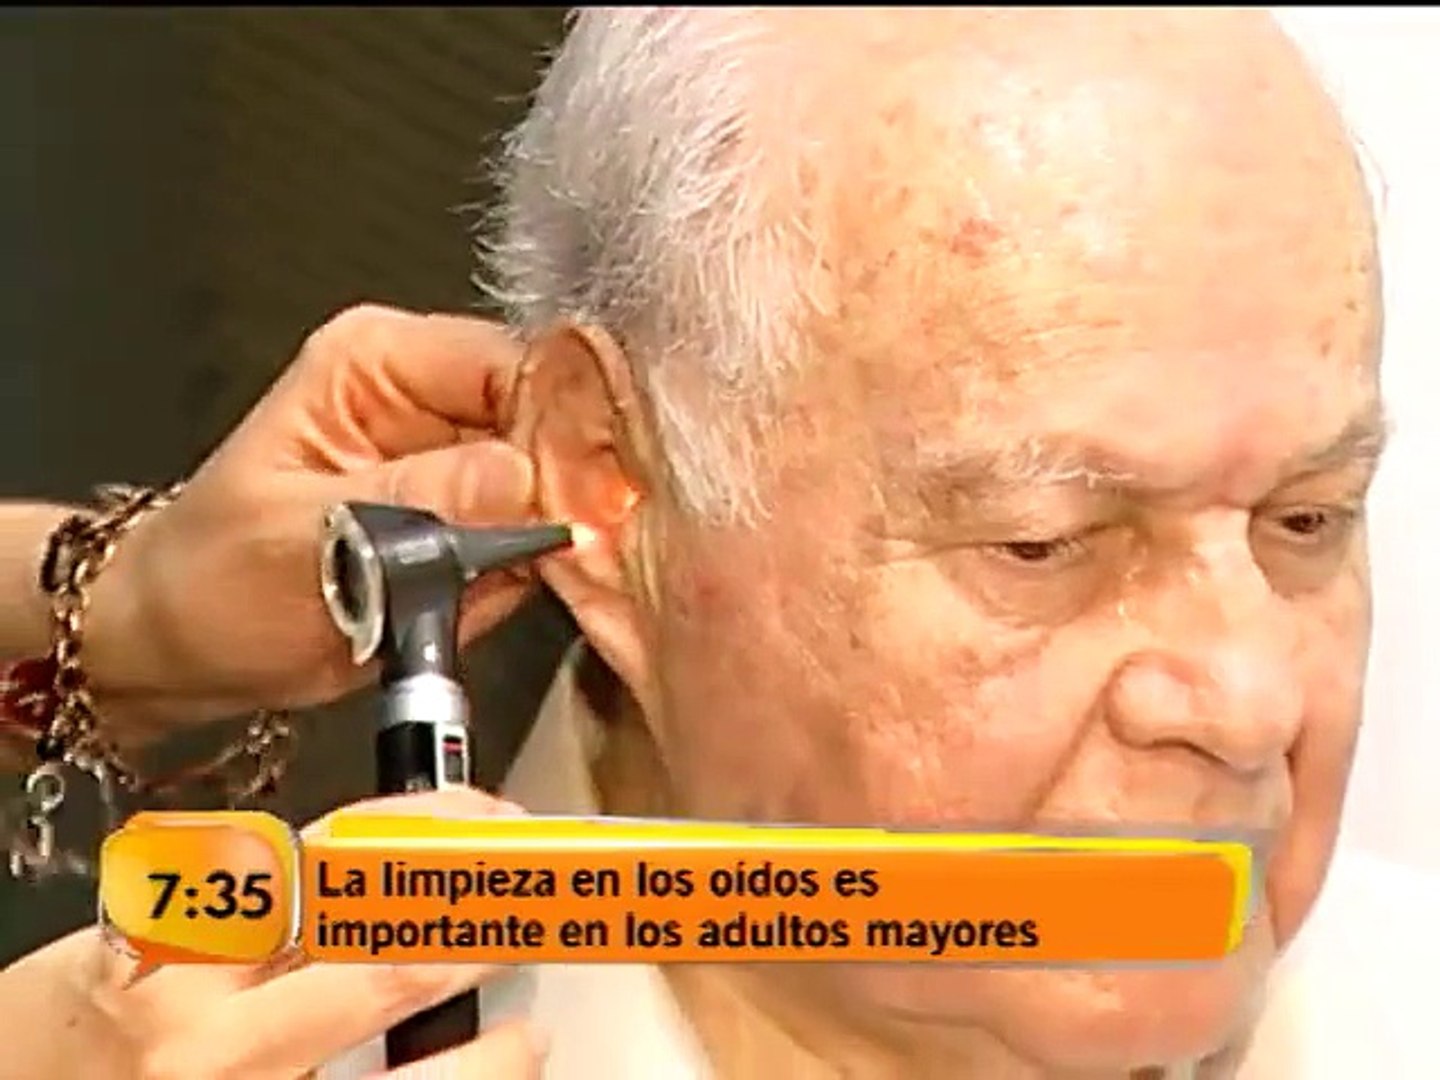 Limpieza de los oídos de adultos mayores es de vital para la salud - Vídeo  Dailymotion